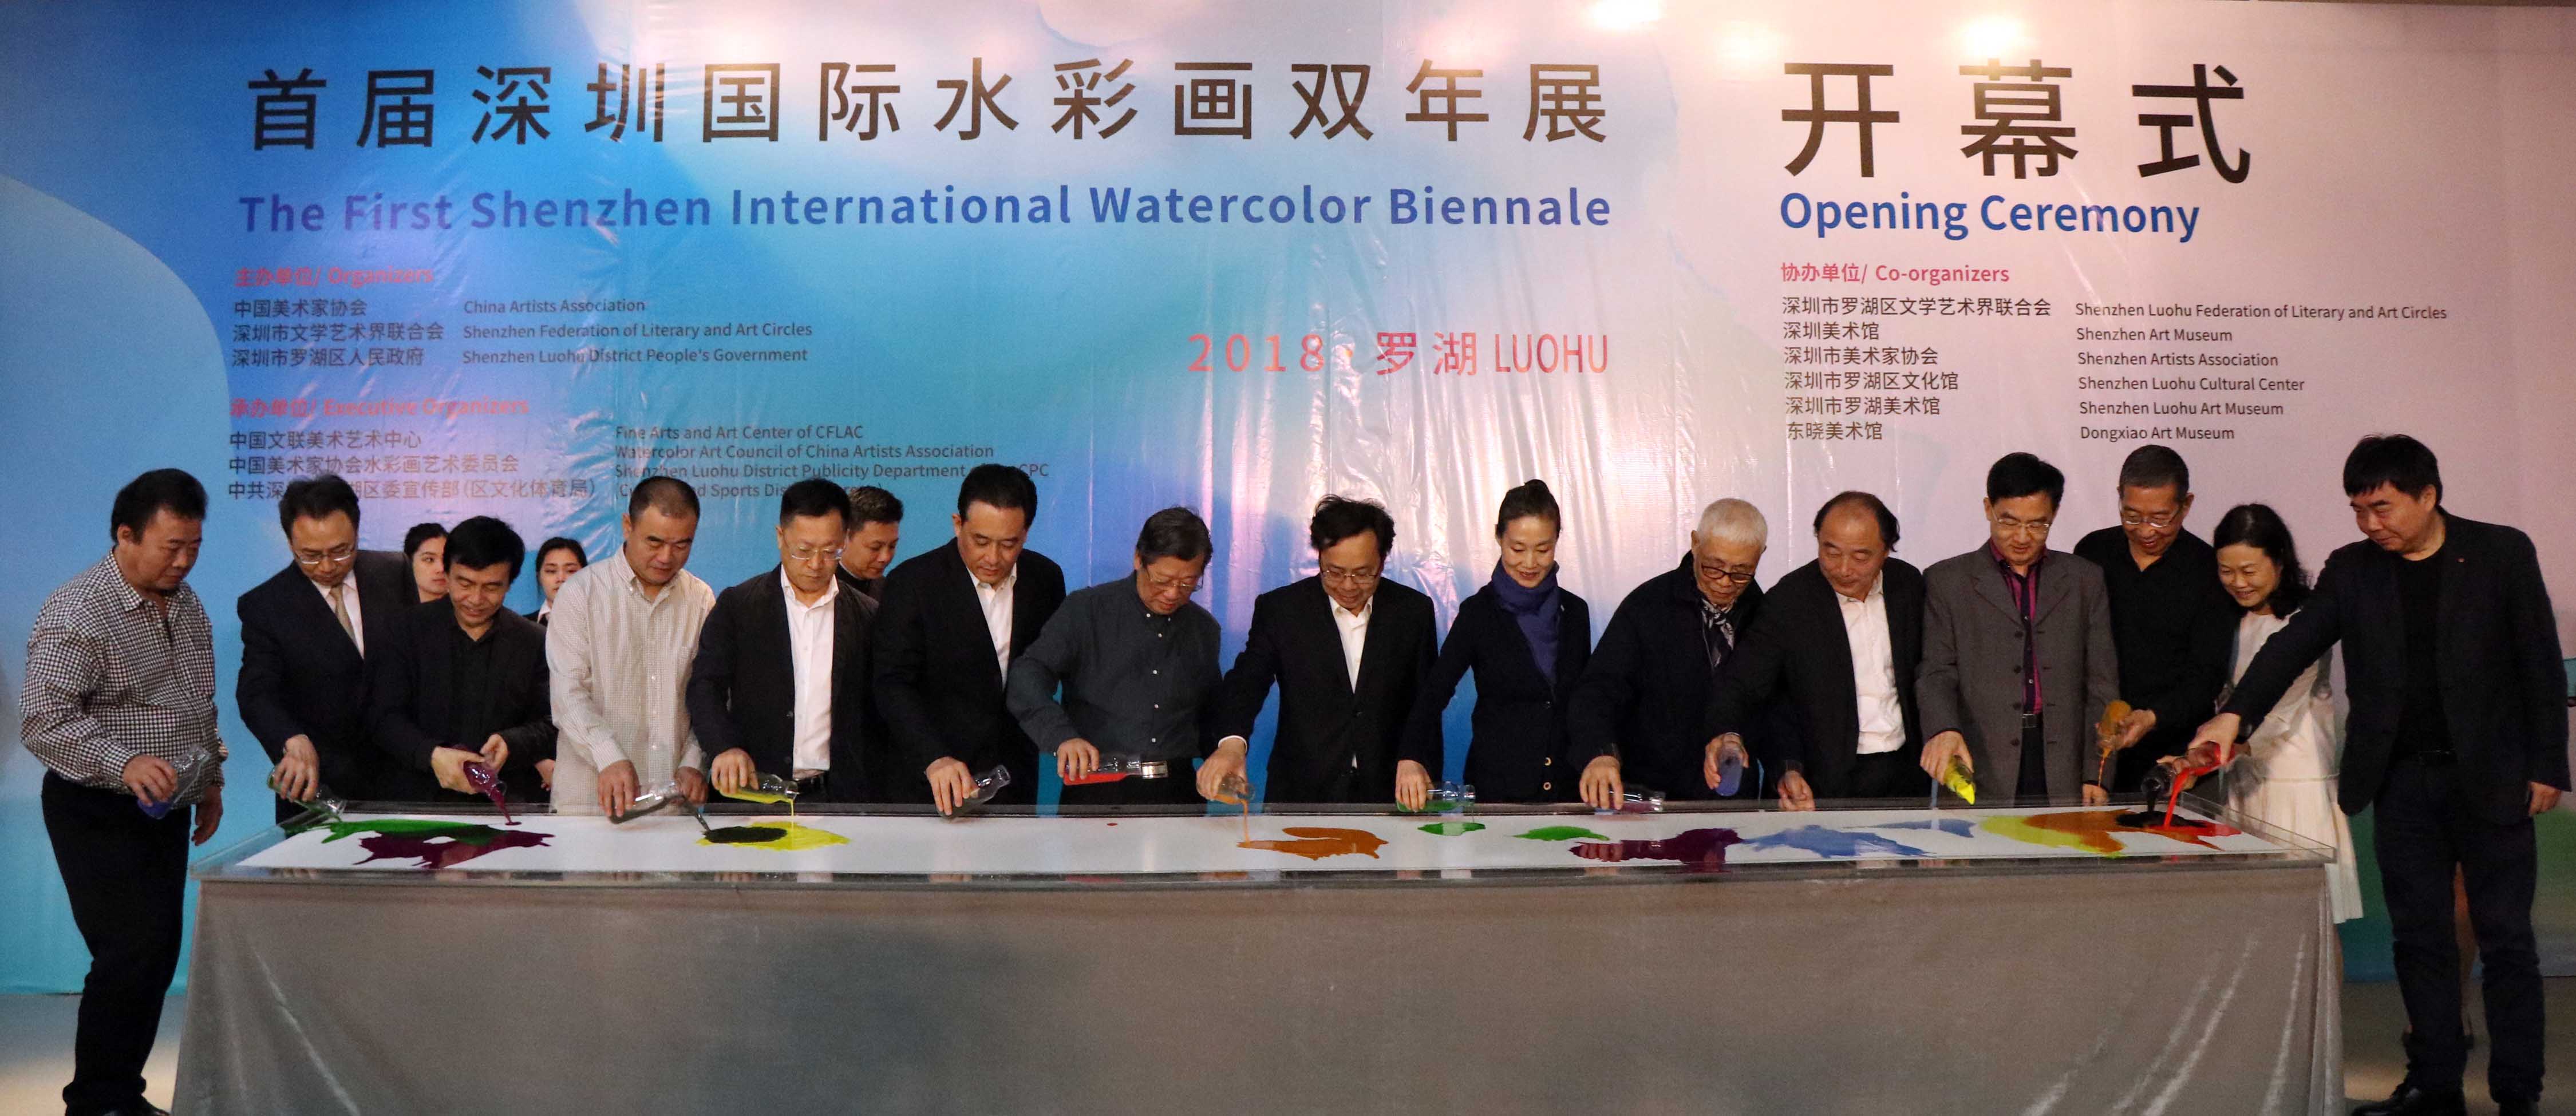 首届深圳国际水彩画双年展在深圳罗湖开幕